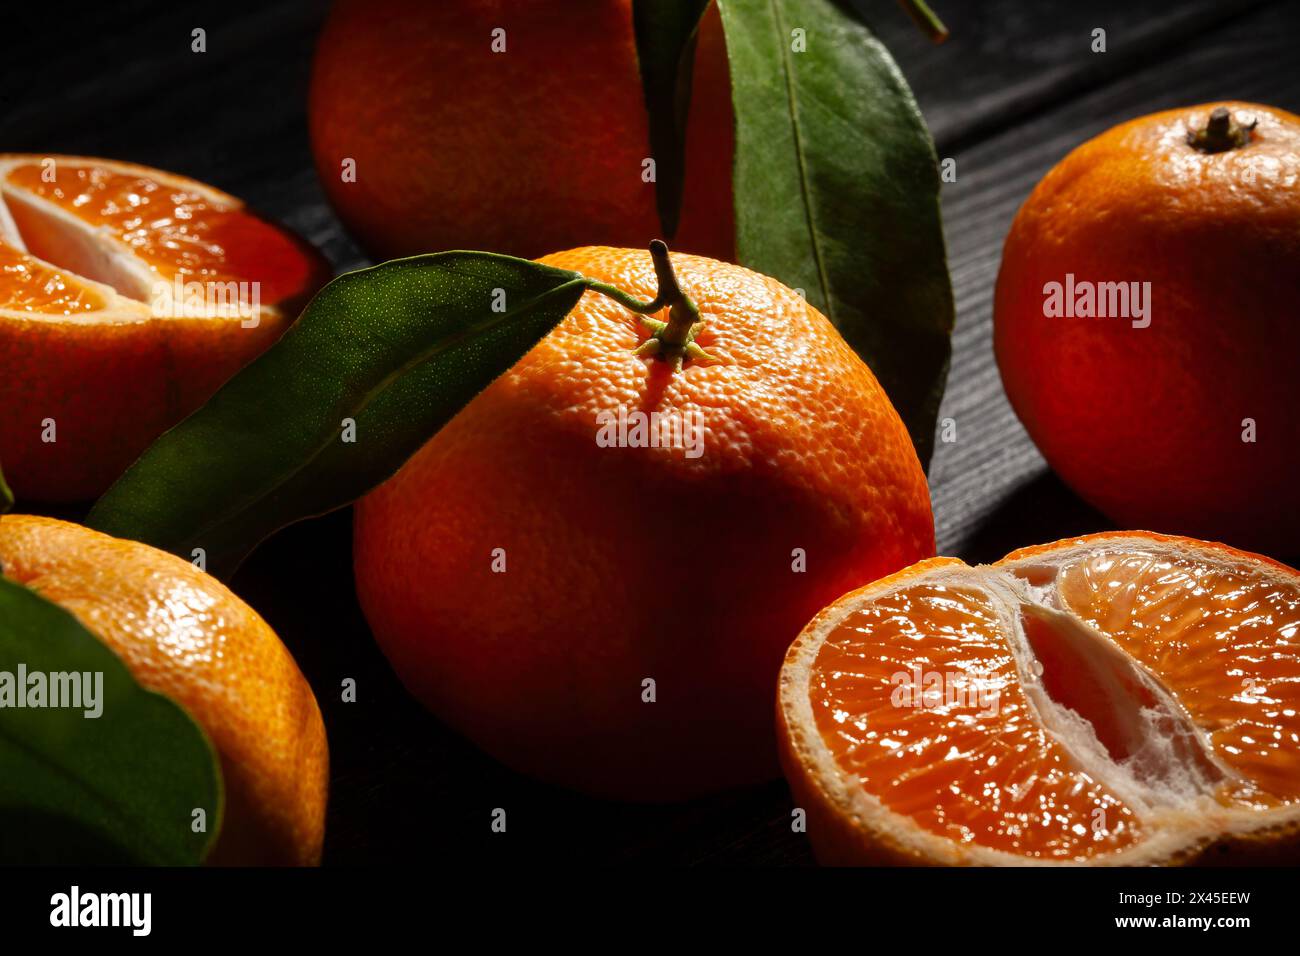 tangerine on black wood background Stock Photo